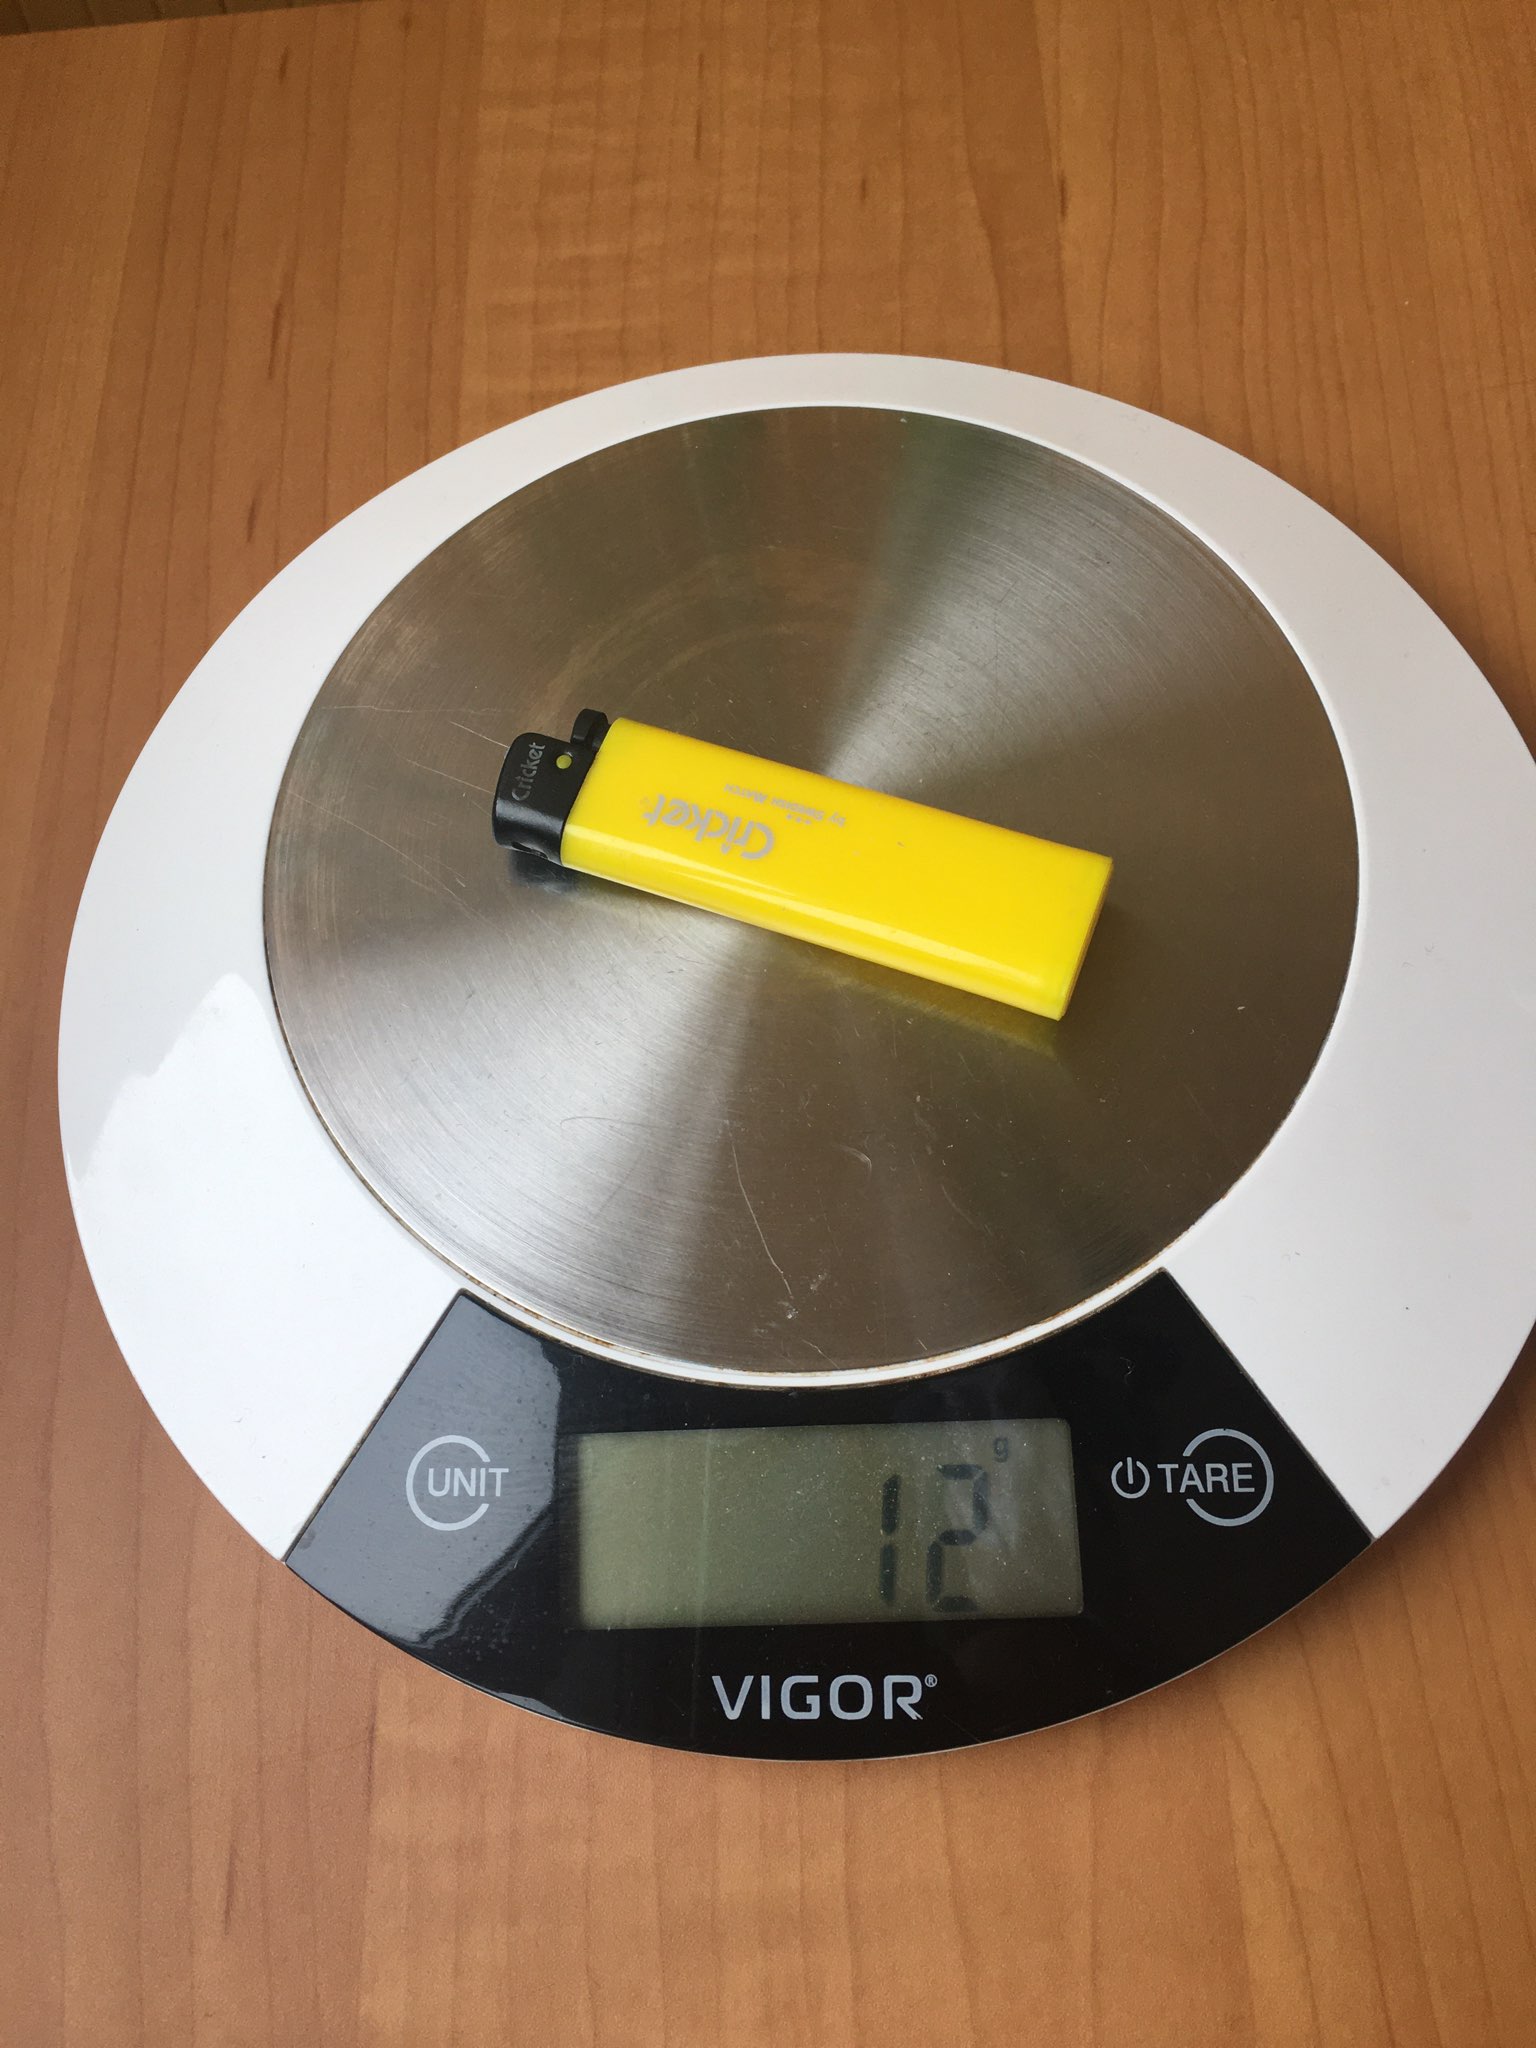 How much does a regular lighter weigh?